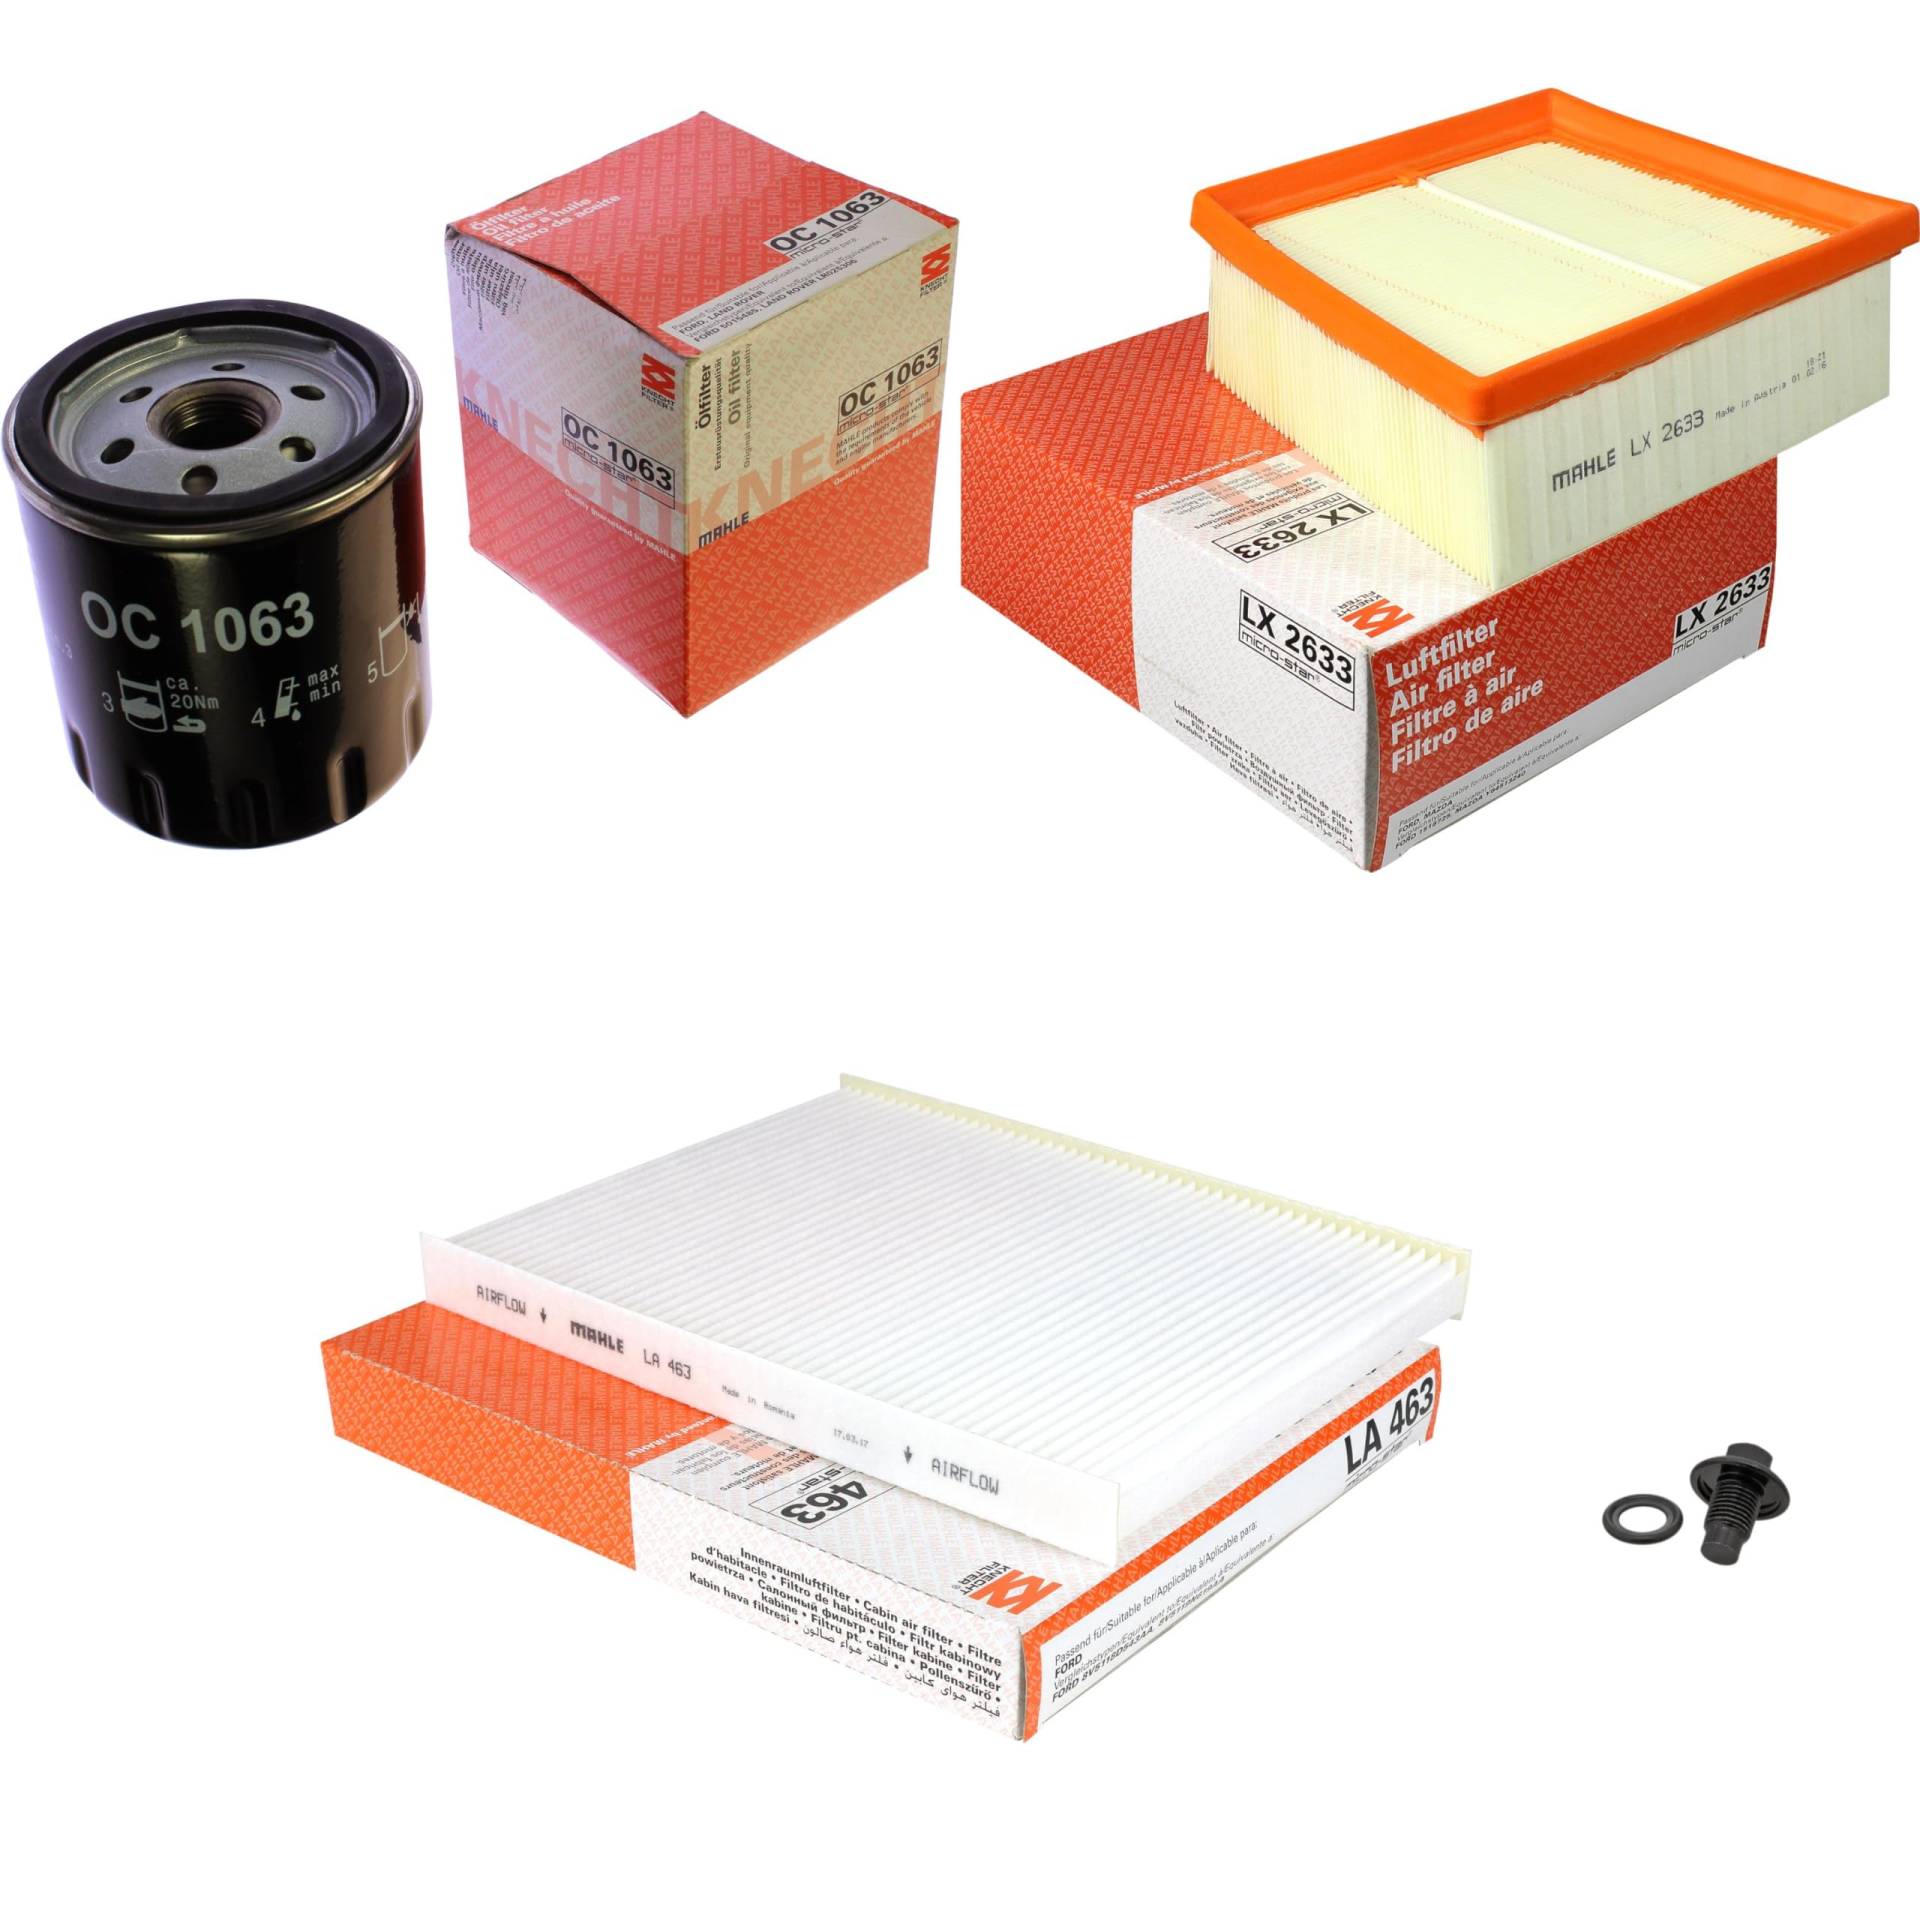 Inspektionspaket Wartungspaket Filterset mit Ölfilter OC 1063, Luftfilter LX 2633, Innenraumfilter LA 463, Verschlussschraube von EISENFELS